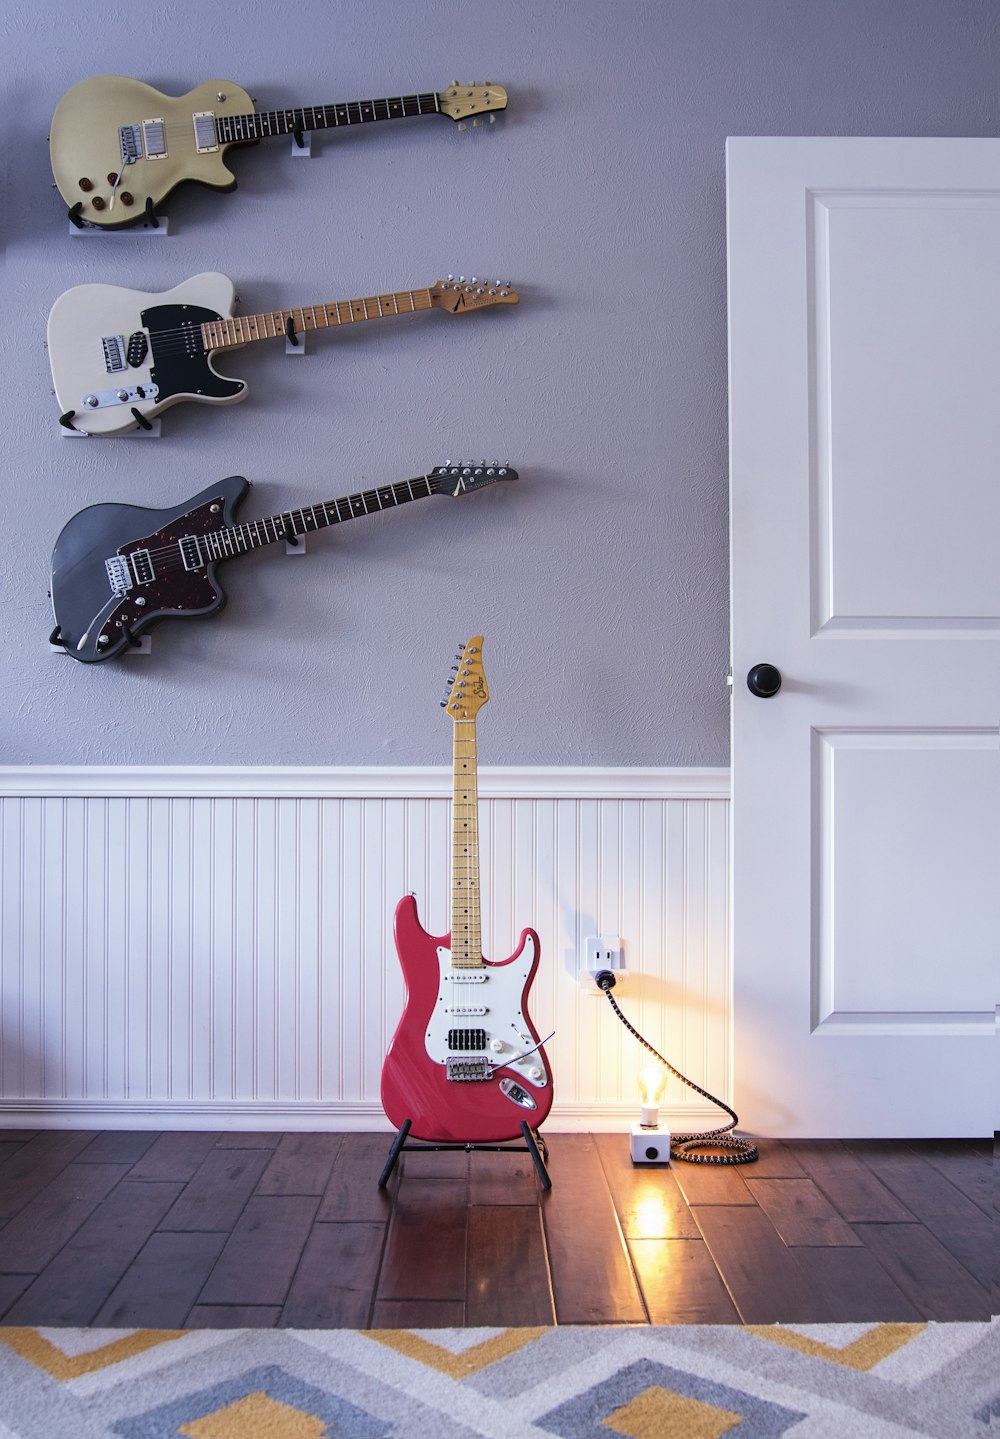 quatro guitarras elétricas de cores variadas